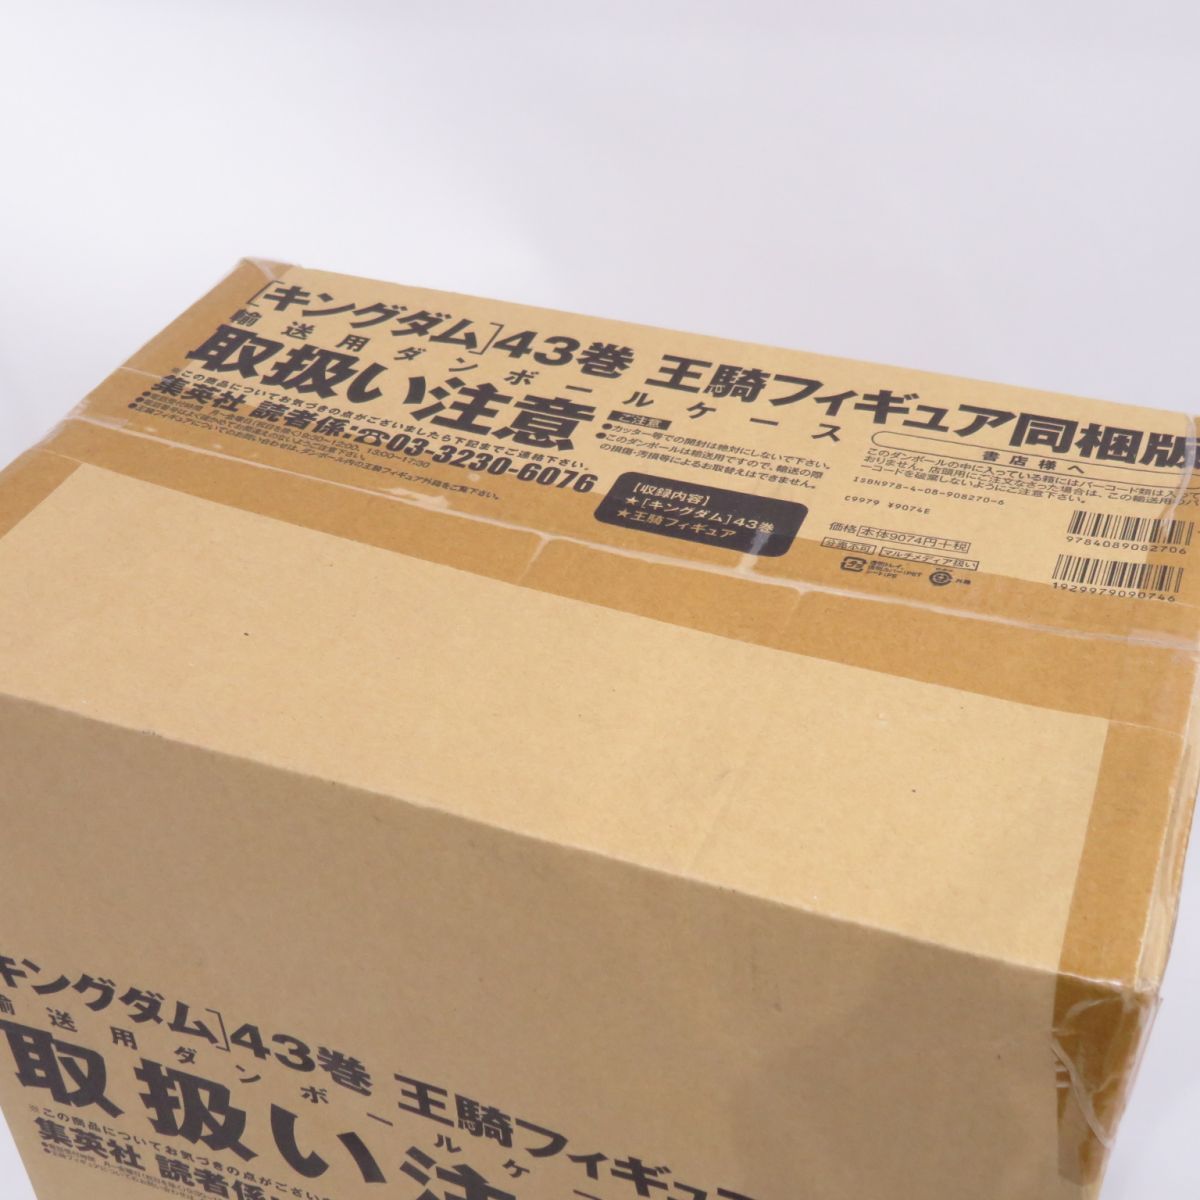 【輸送箱未開封】キングダム 43巻 王騎フィギュア同梱版